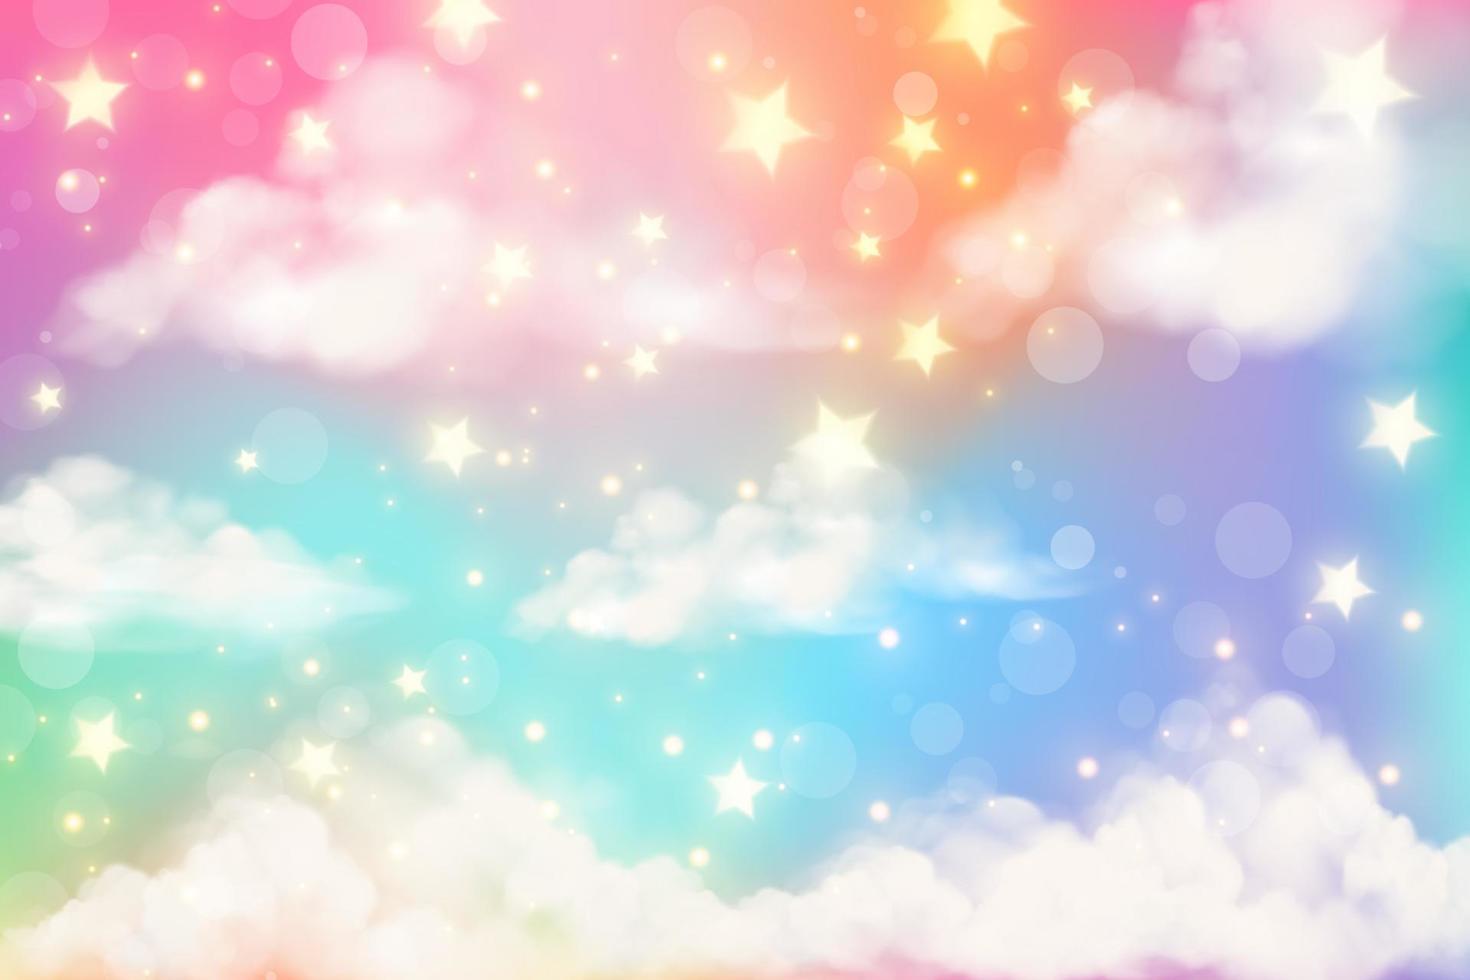 sfondo arcobaleno realistico di fantasia con nuvole in colori pastello. carta da parati carina cartone animato unicorno. paesaggio vettoriale fatato.